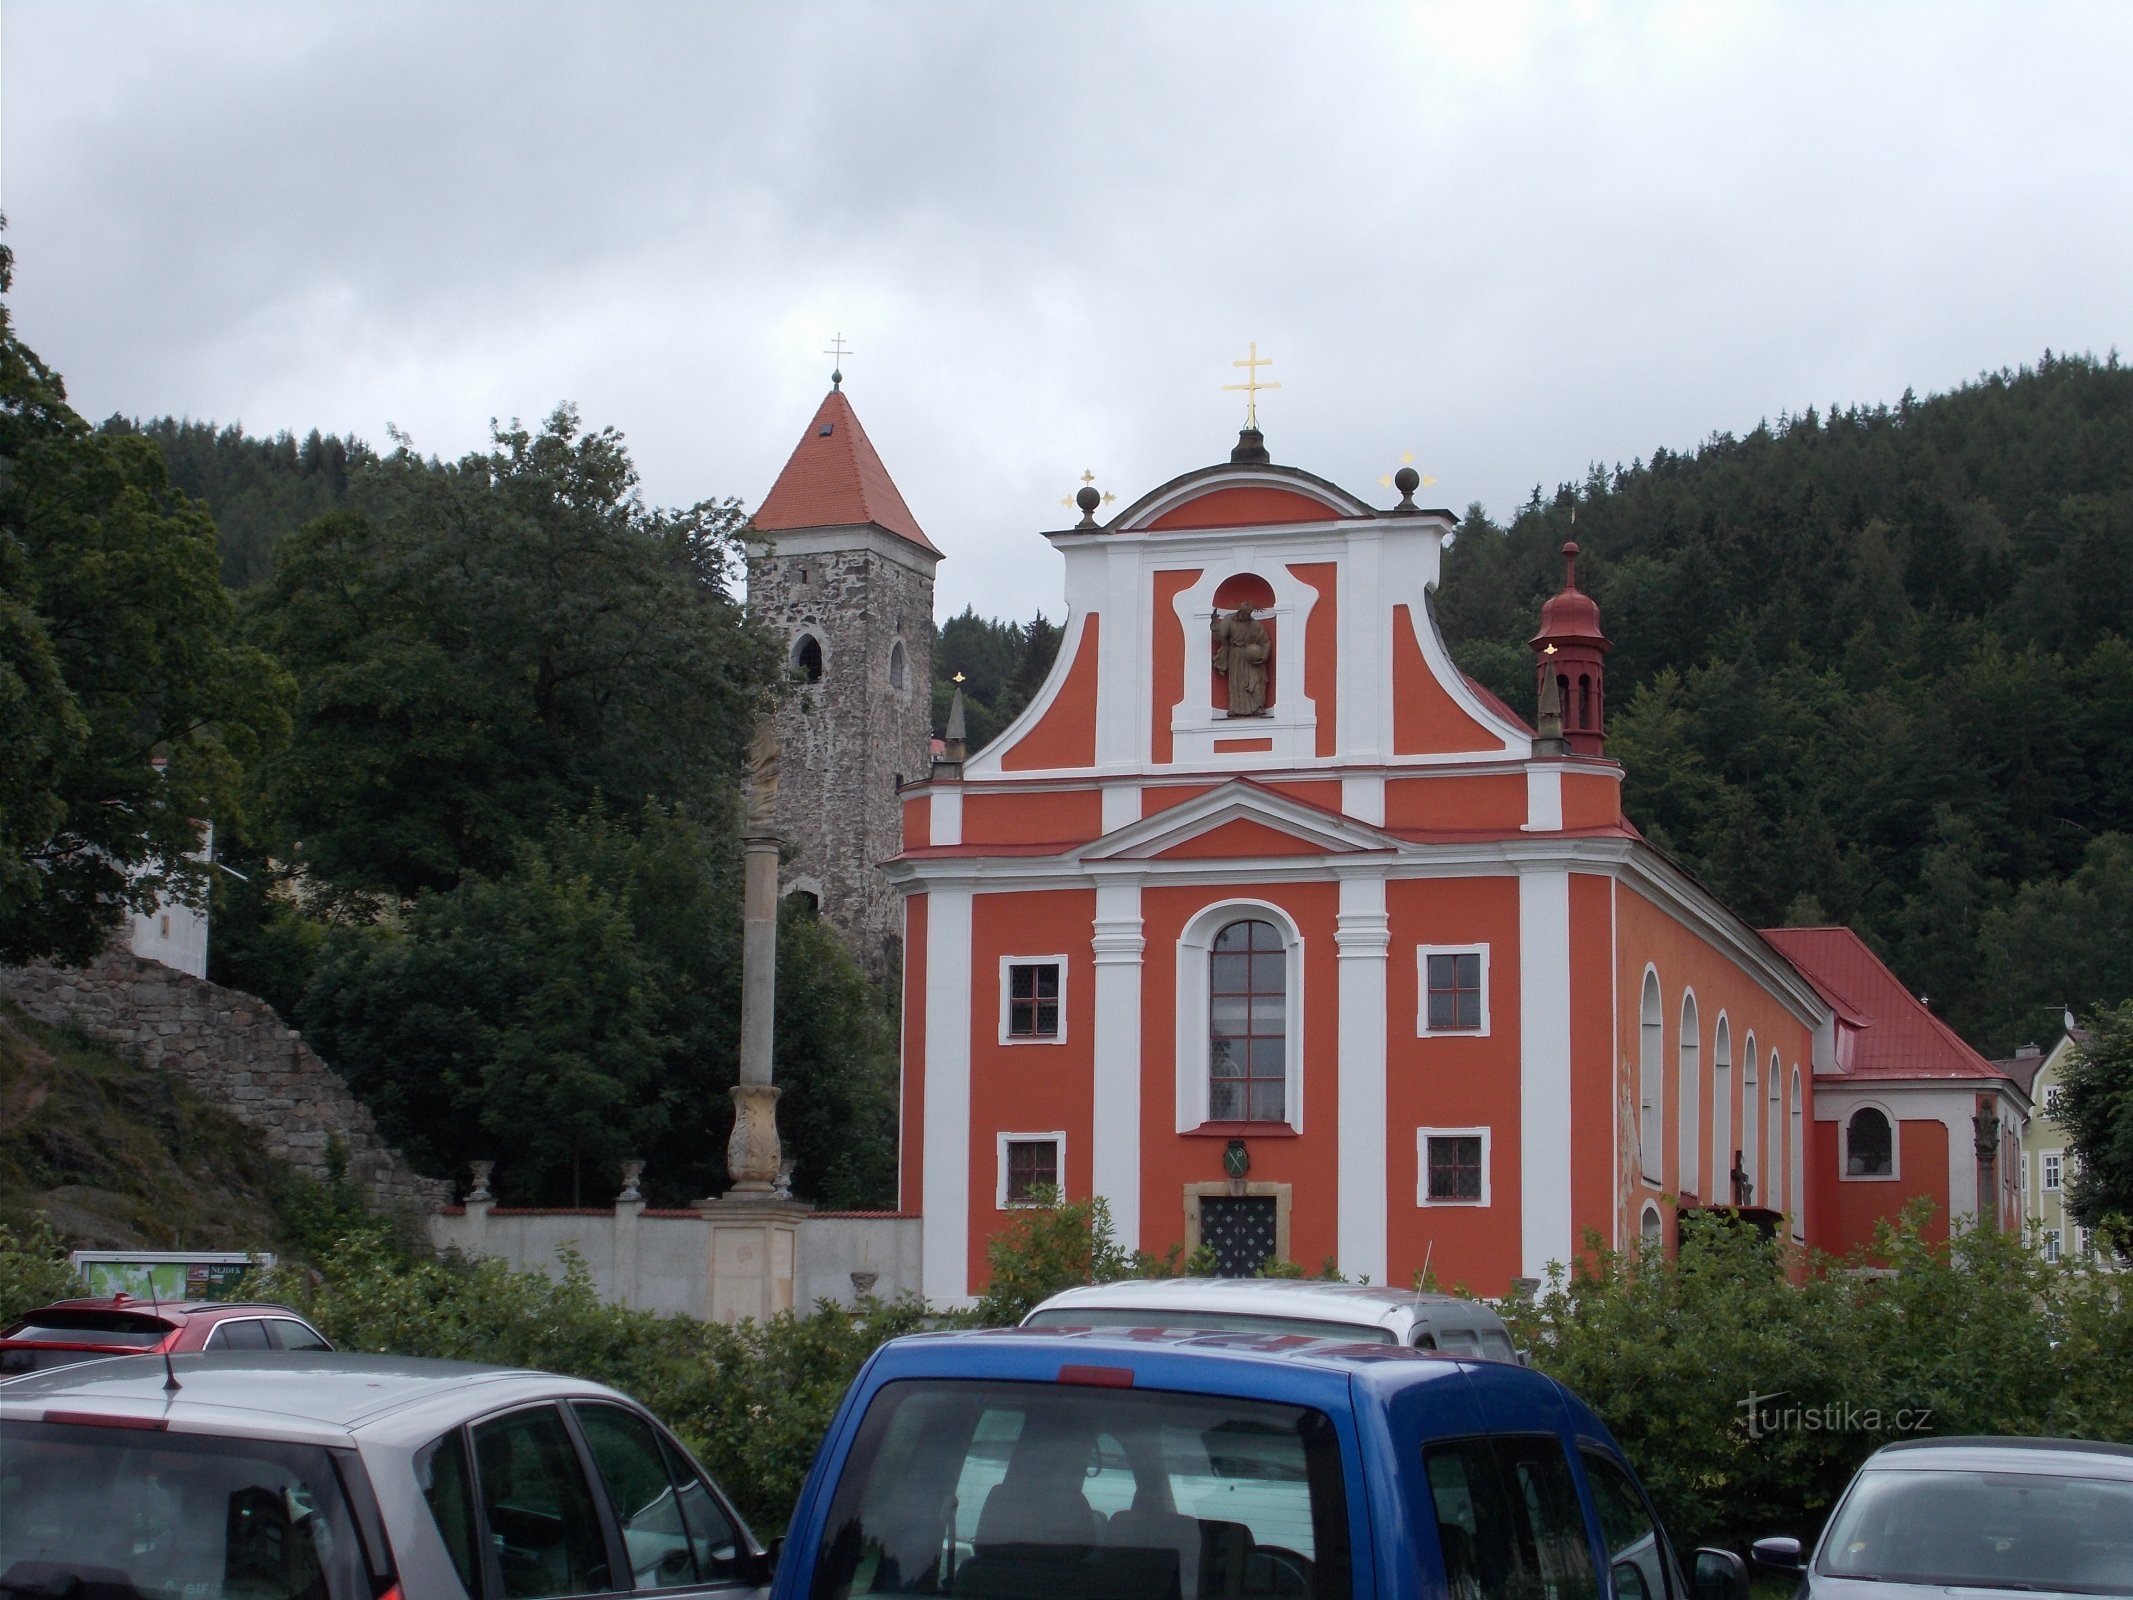 Нейдек - церковь св. Мартин и остатки замка